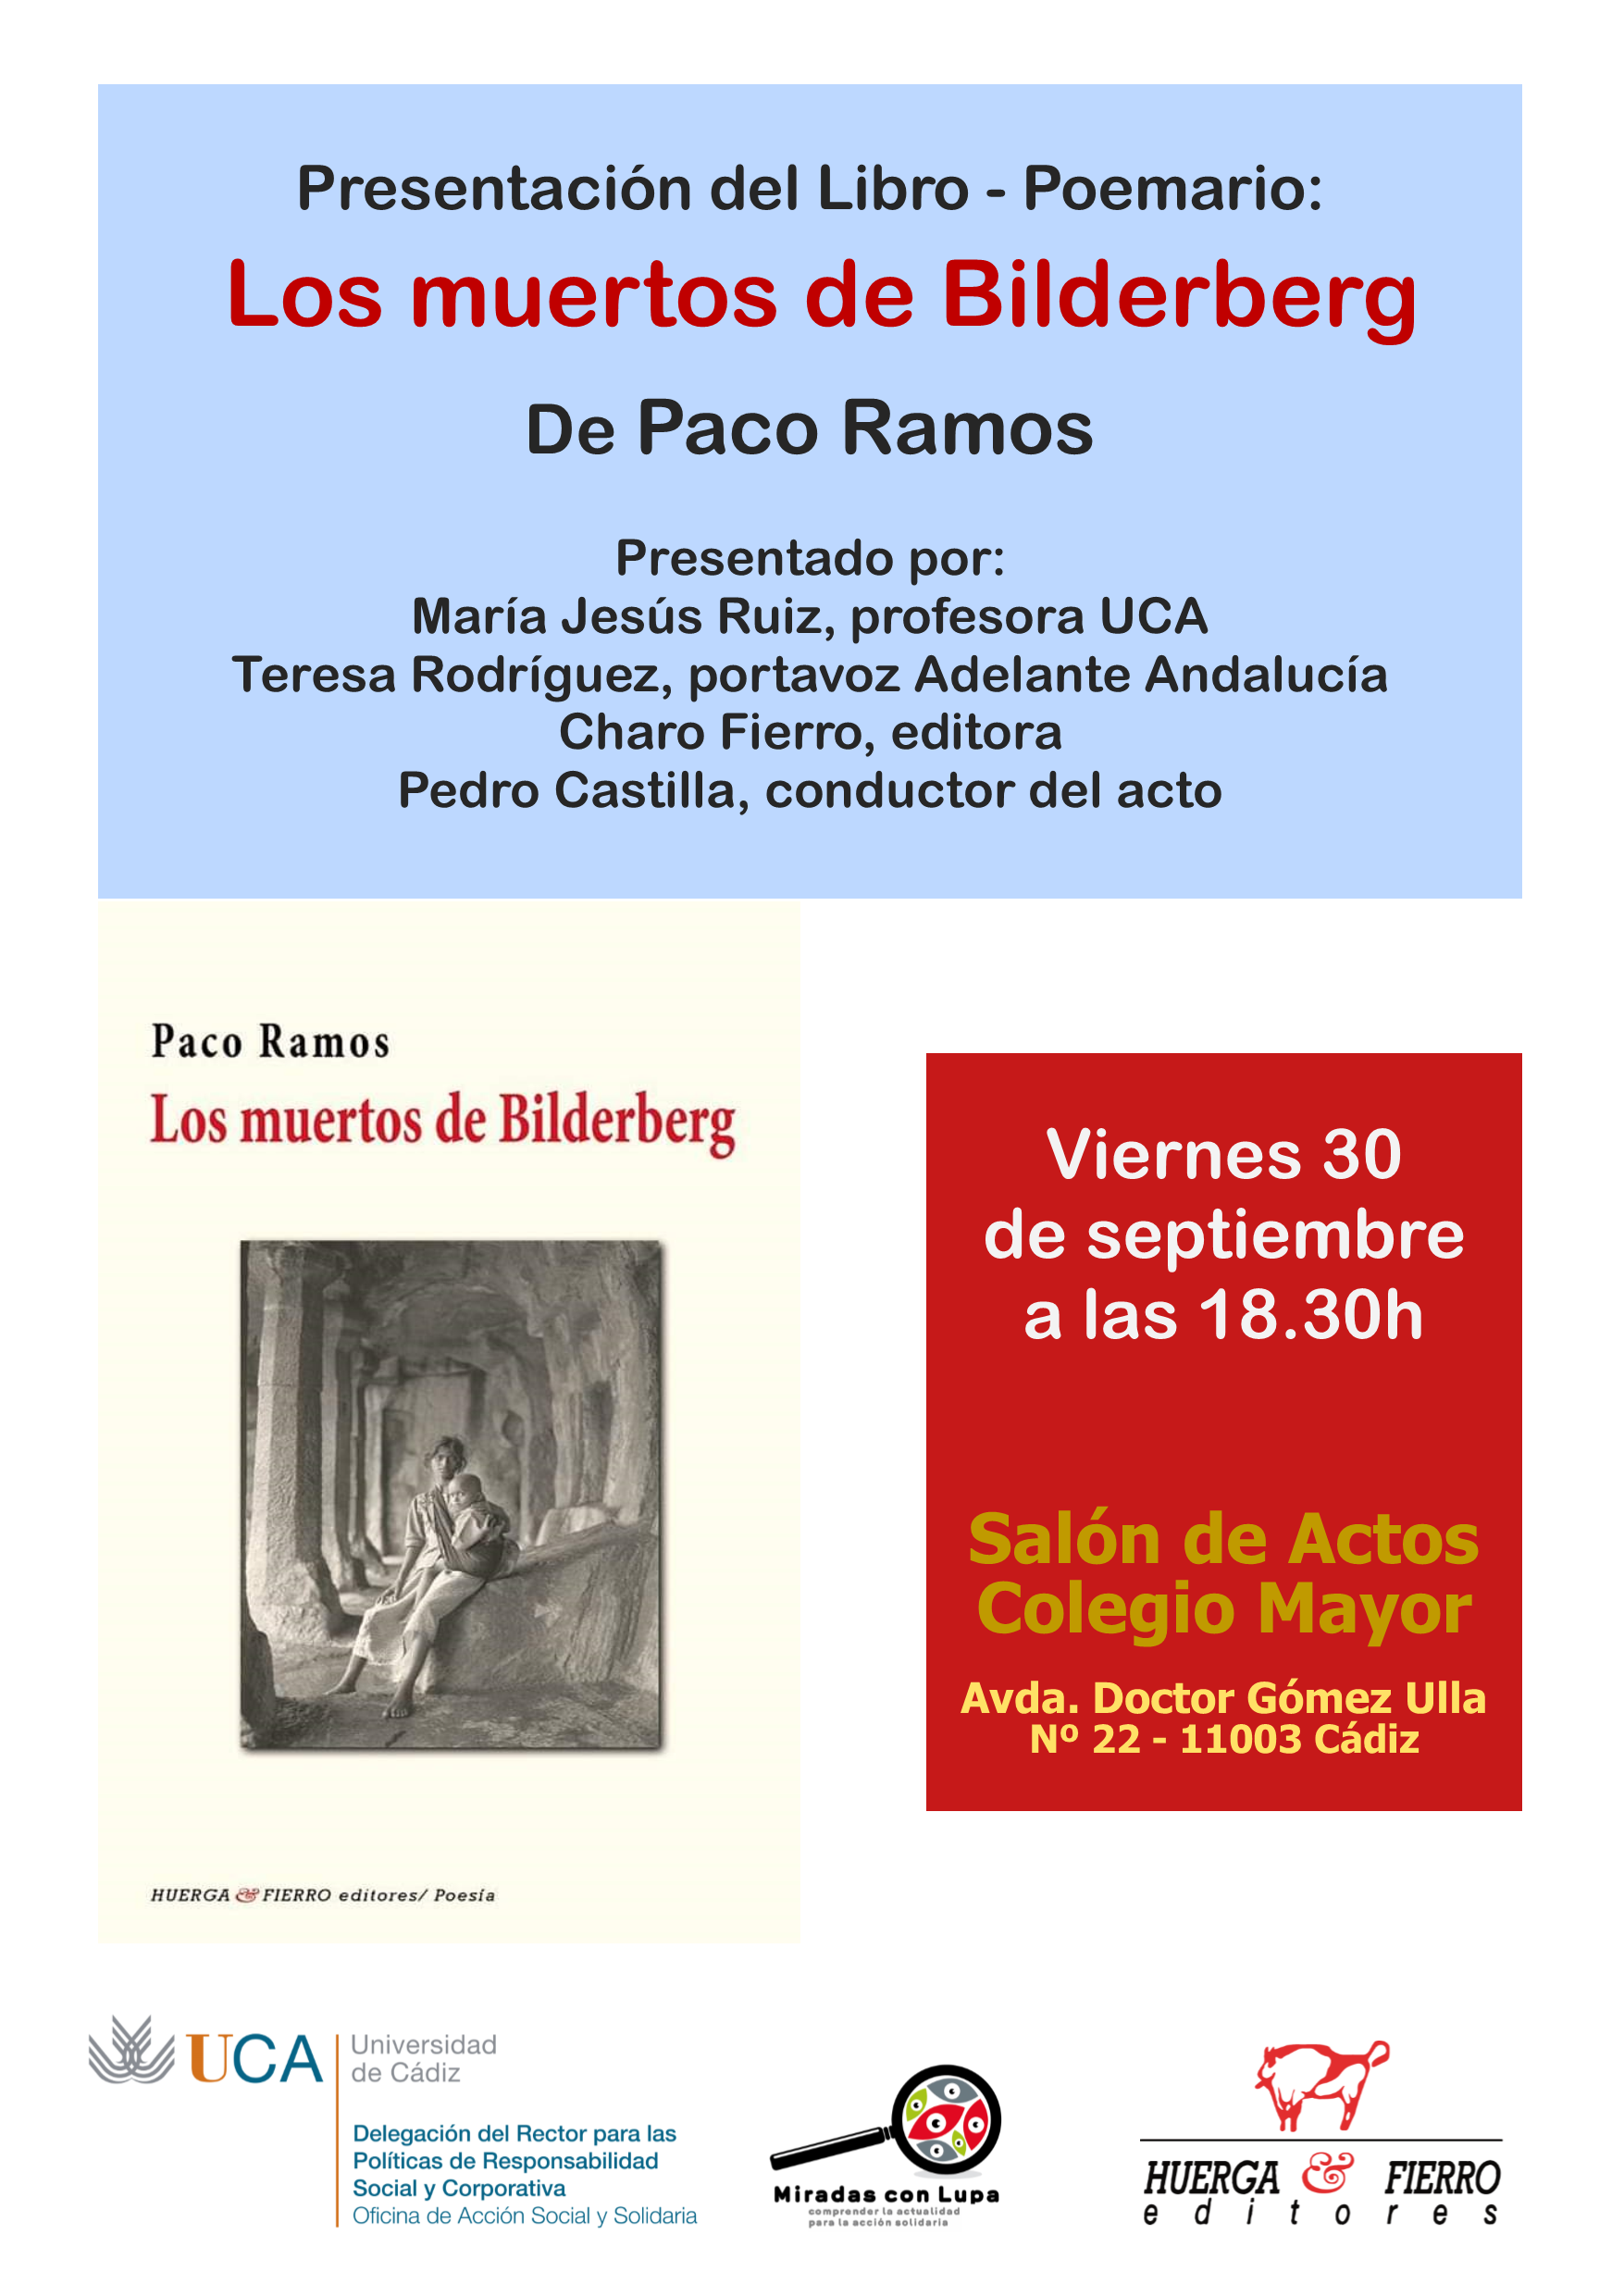 Cádiz. 30 de Septiembre. Presentación del Libro-Poemario “Los muertos de Bilderberg” de Paco Ramos